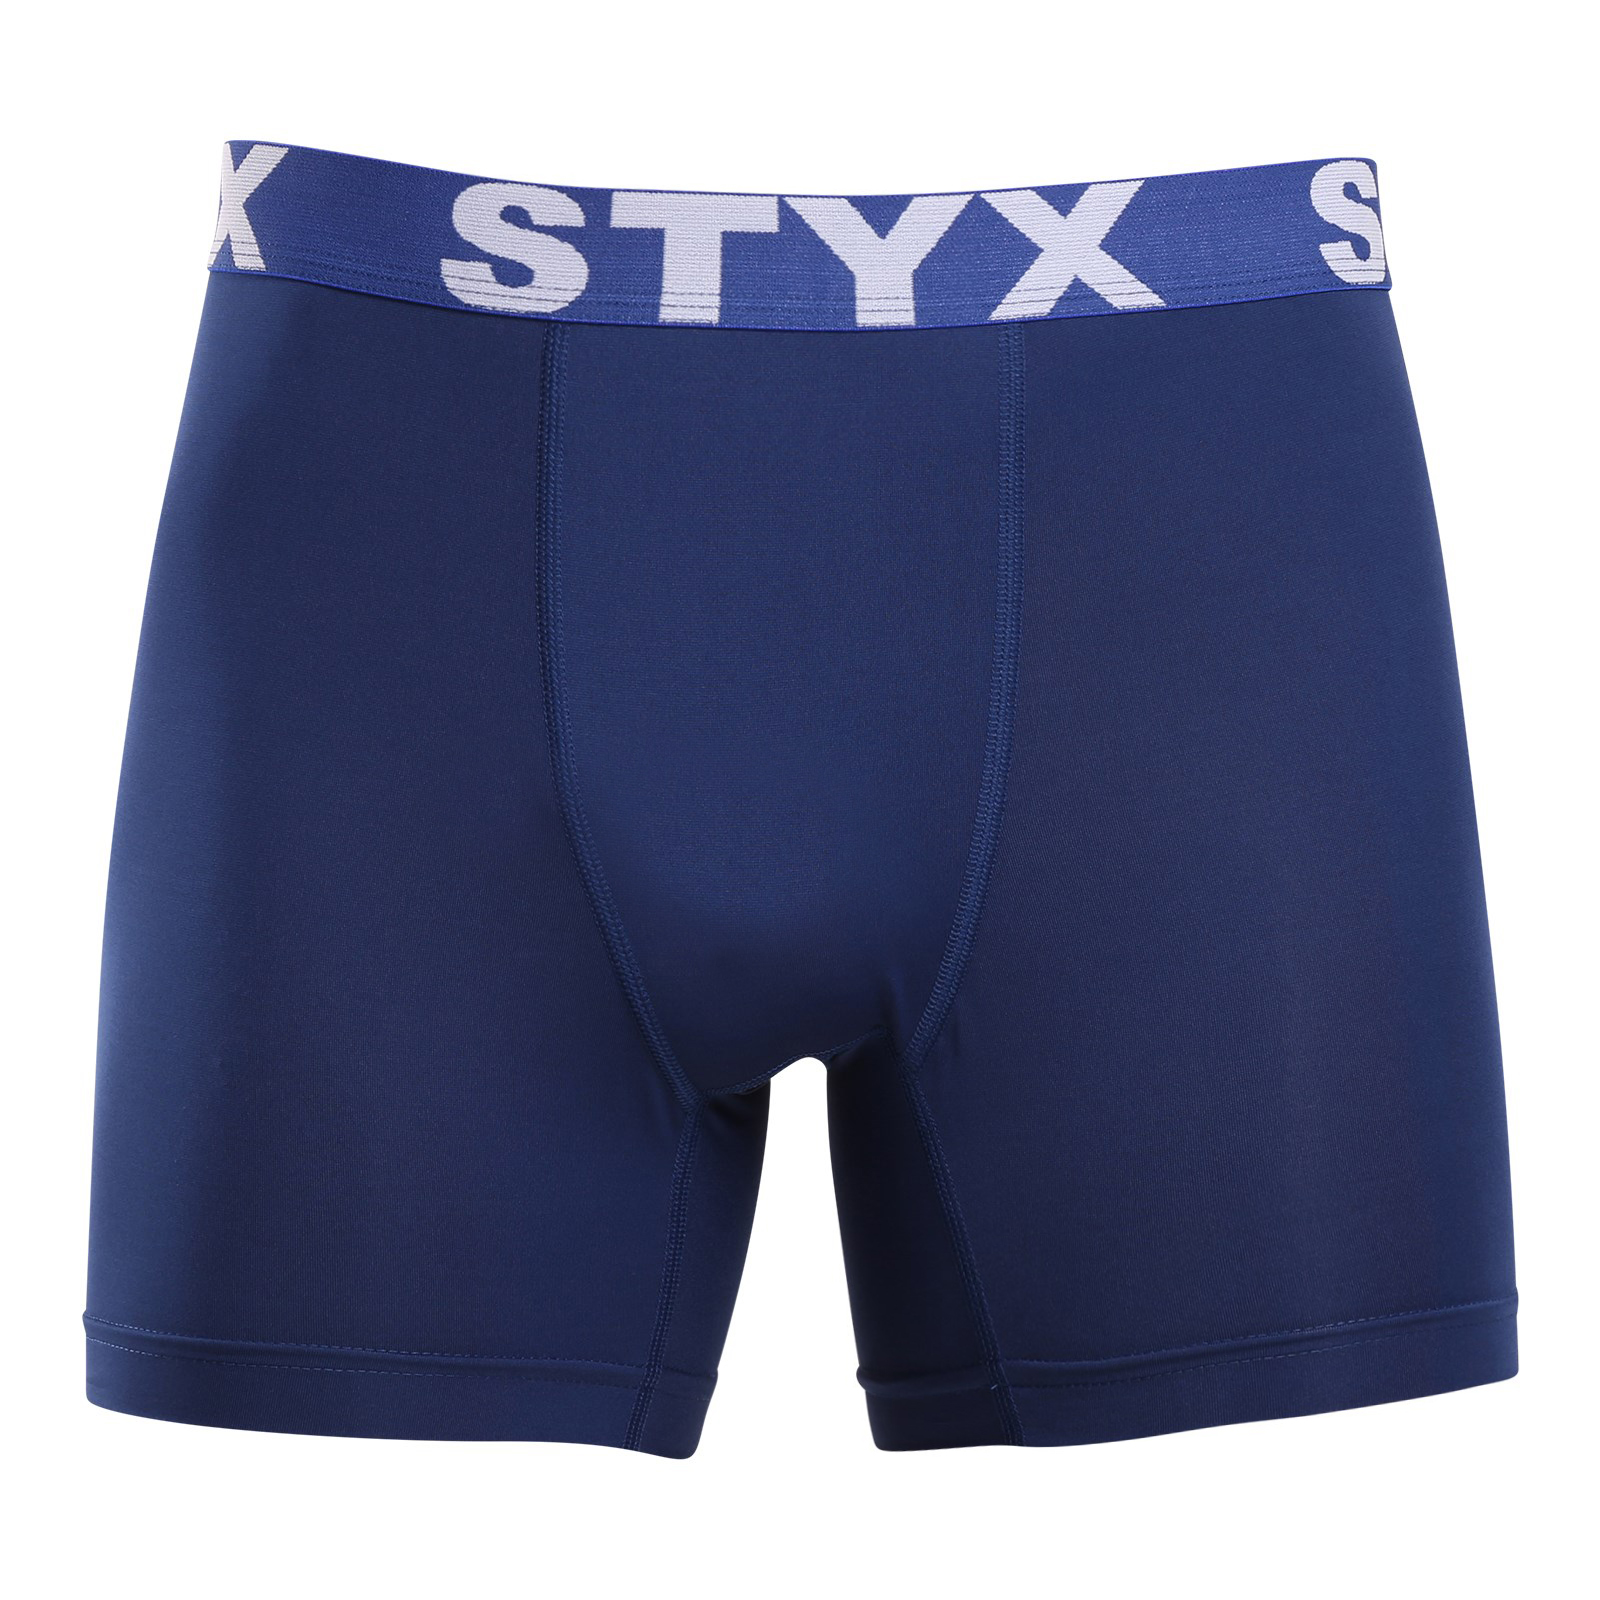 Levně Pánské funkční boxerky Styx tmavě modré (W968) M